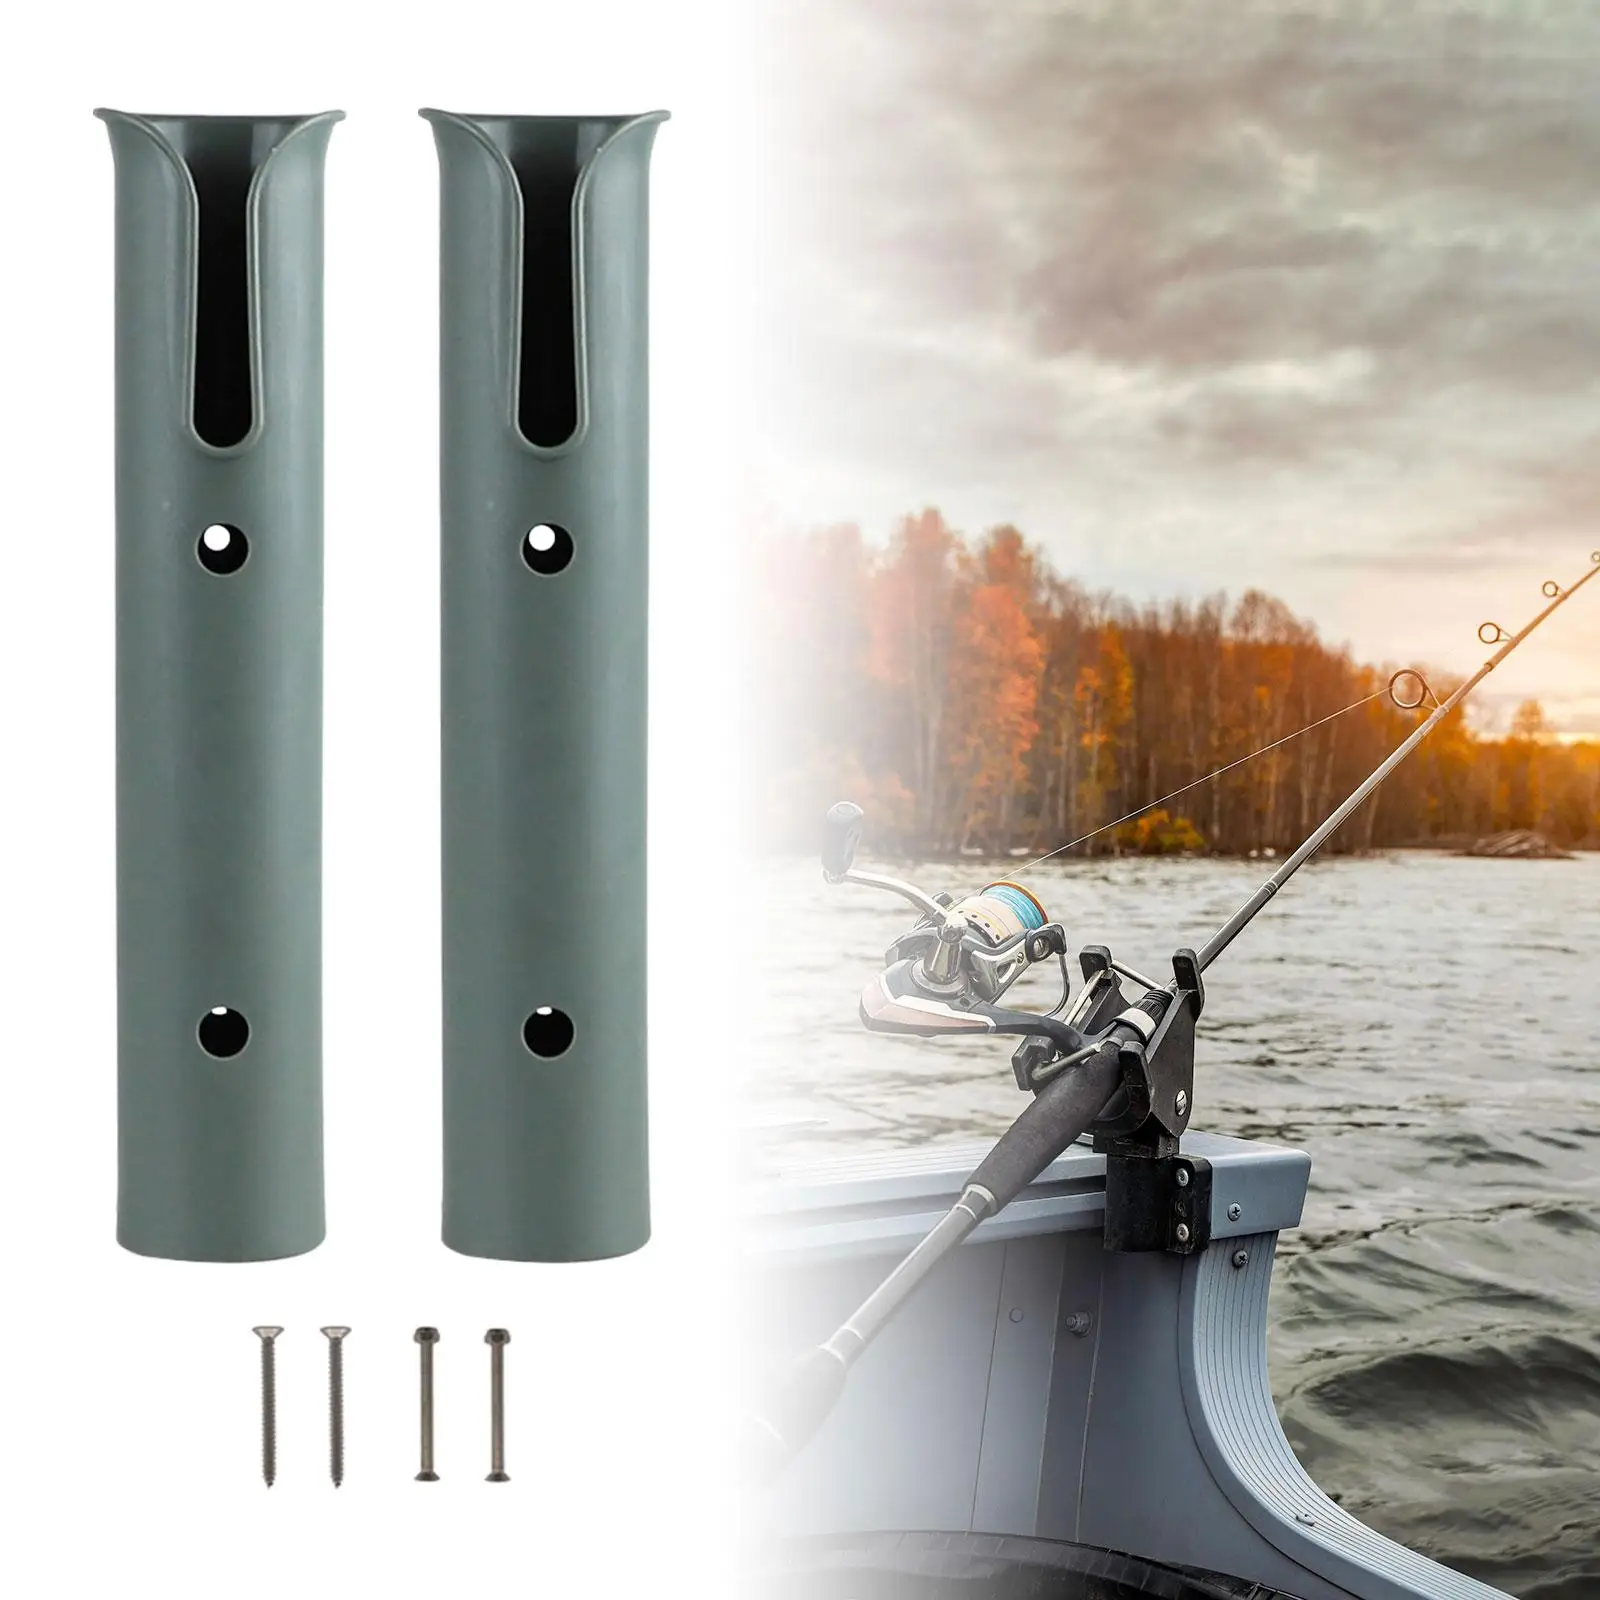 2x Fishing Rod Holder Fishing Pole Holder Multifunction Space Saving Fishing Rod Rack for Cabin Kayak Garage Storage Accessories